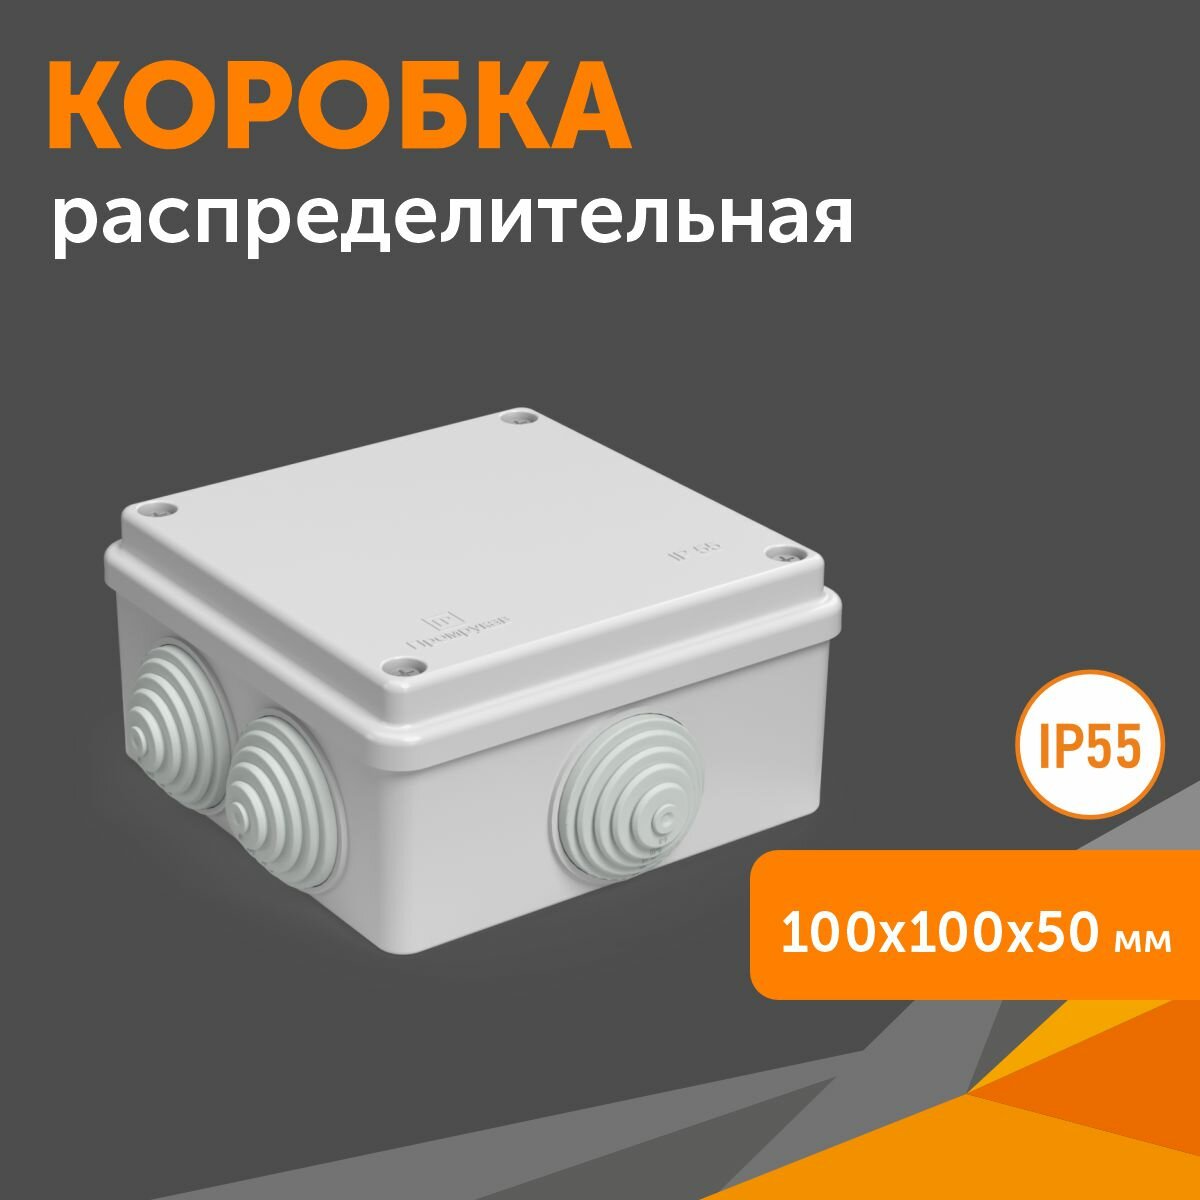 Коробка распределительная 40-0305 для о/п безгалогенная (HF) атмосферостойкая 100х100х50, 1шт